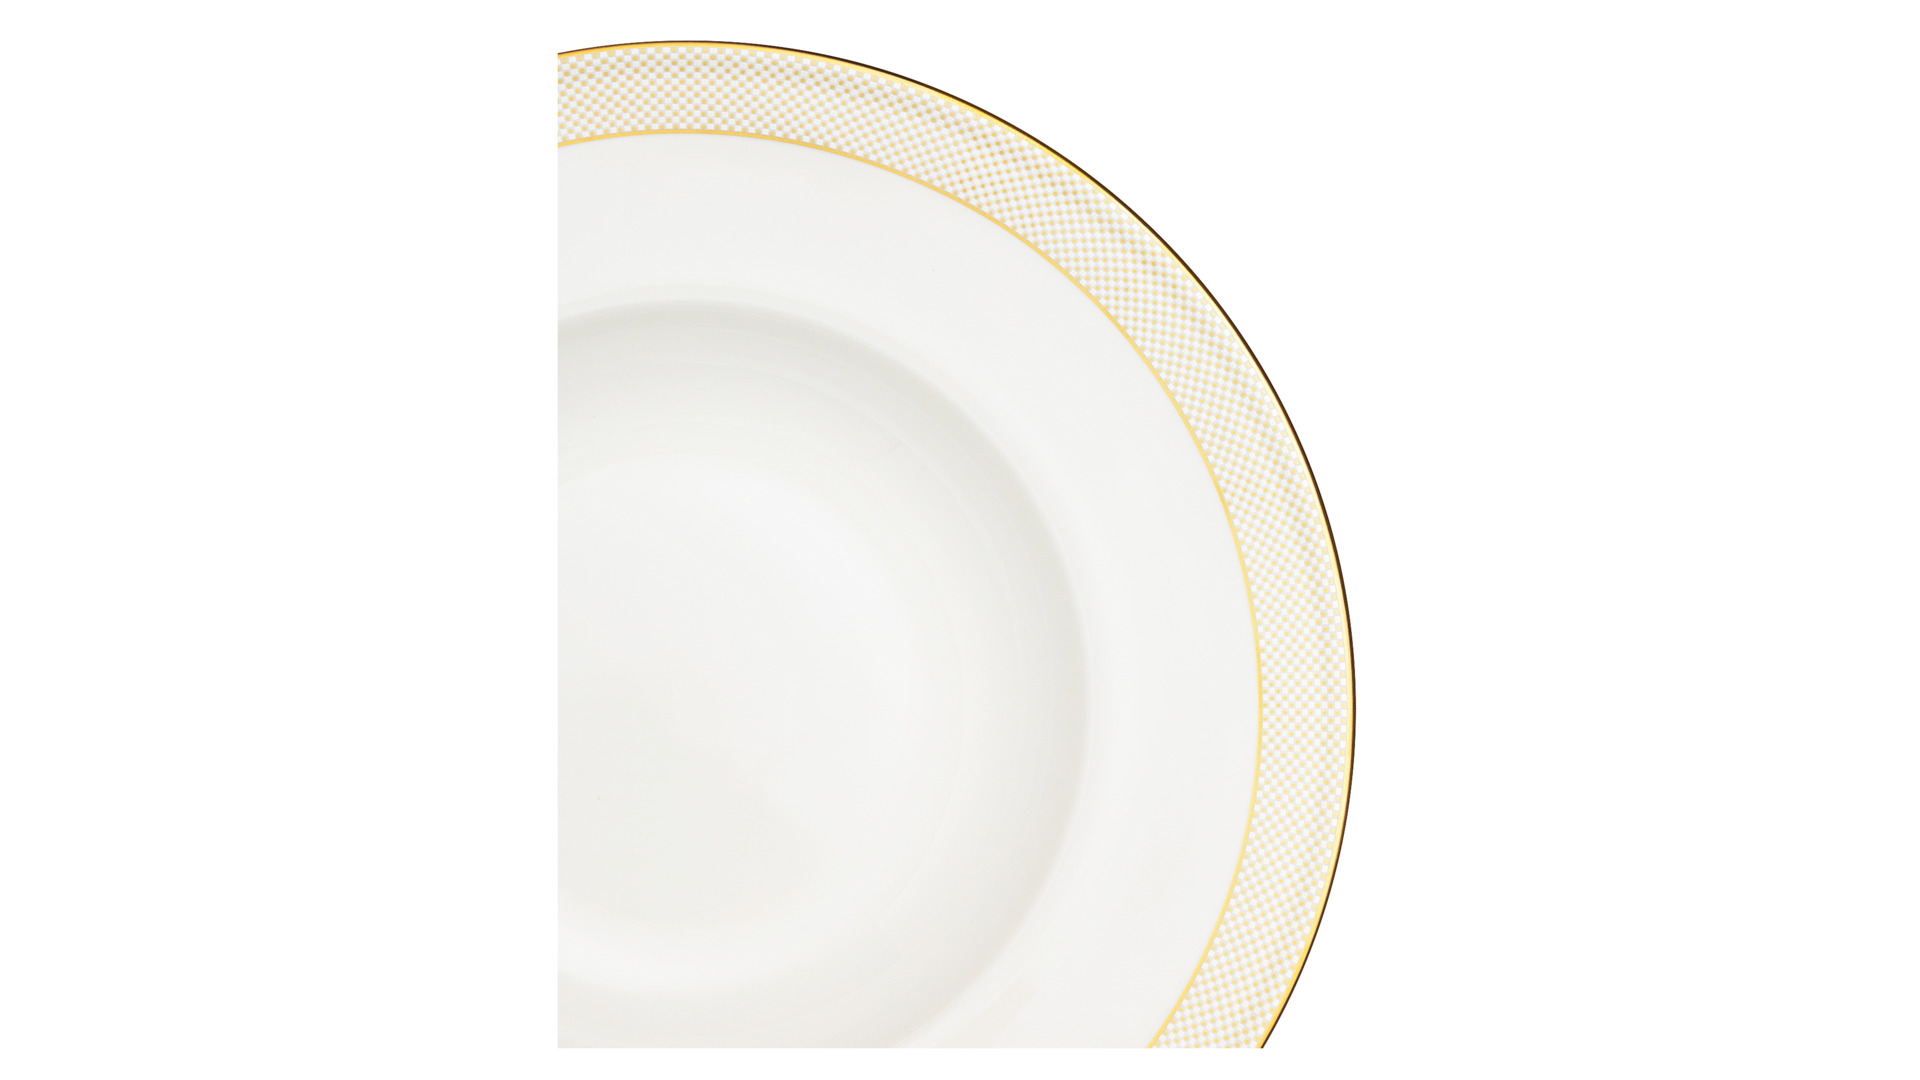 Тарелка суповая Narumi Золотая паутина 23 см, фарфор костяной